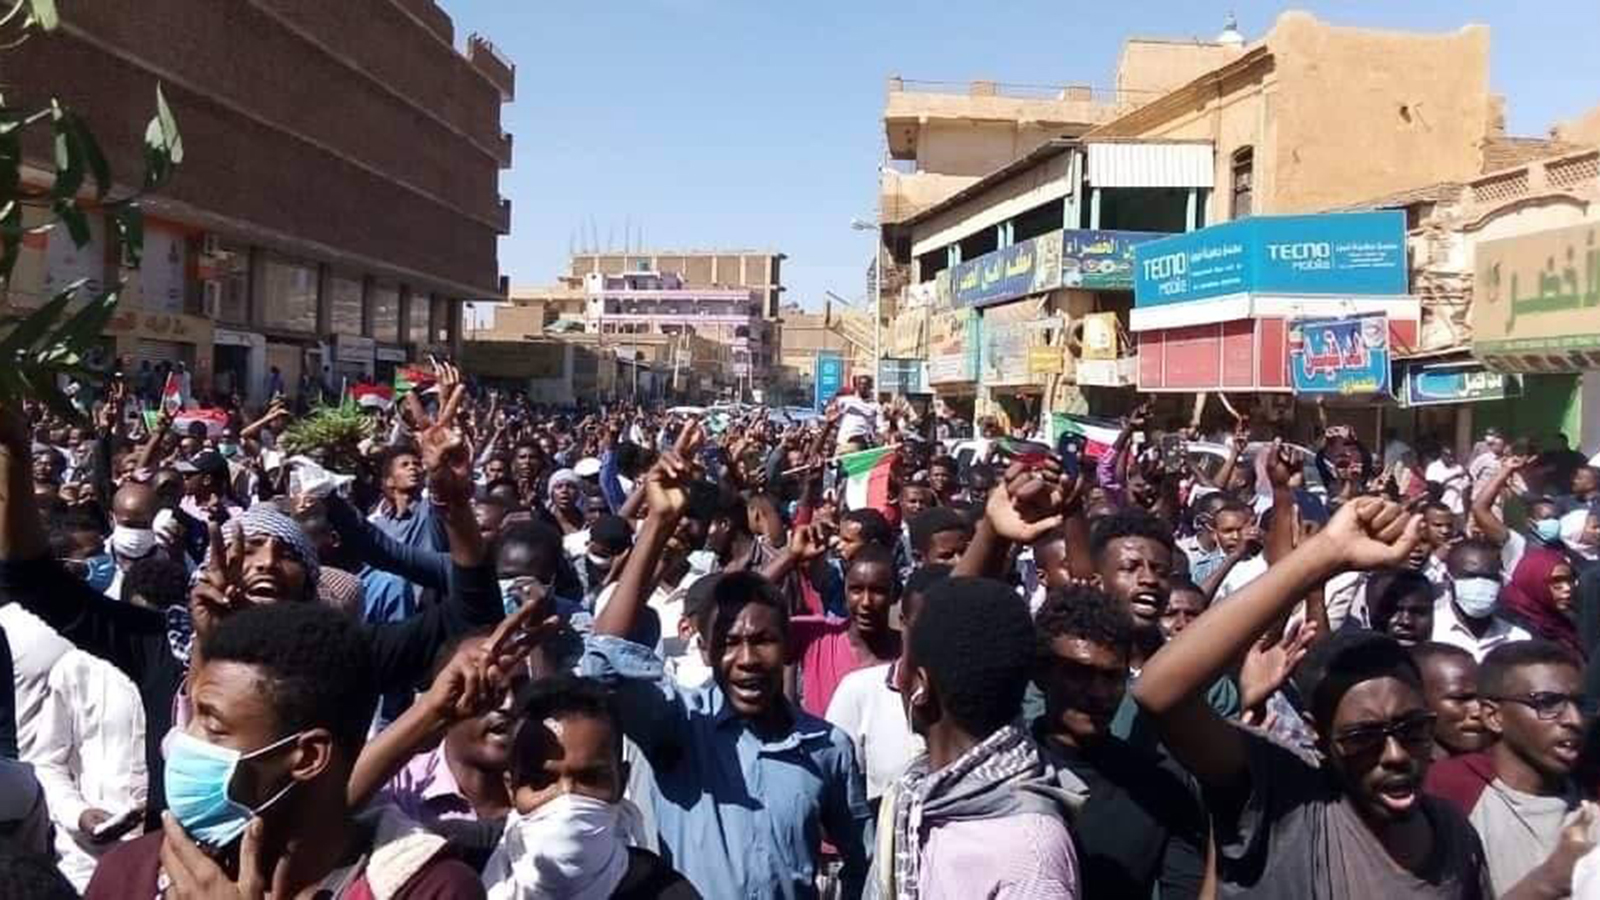 ‪الاحتجاجات في السودان دخلت شهرها الثالث مطالبة بتنحي الرئيس وسقوط النظام‬ (مواقع التواصل الاجتماعي)